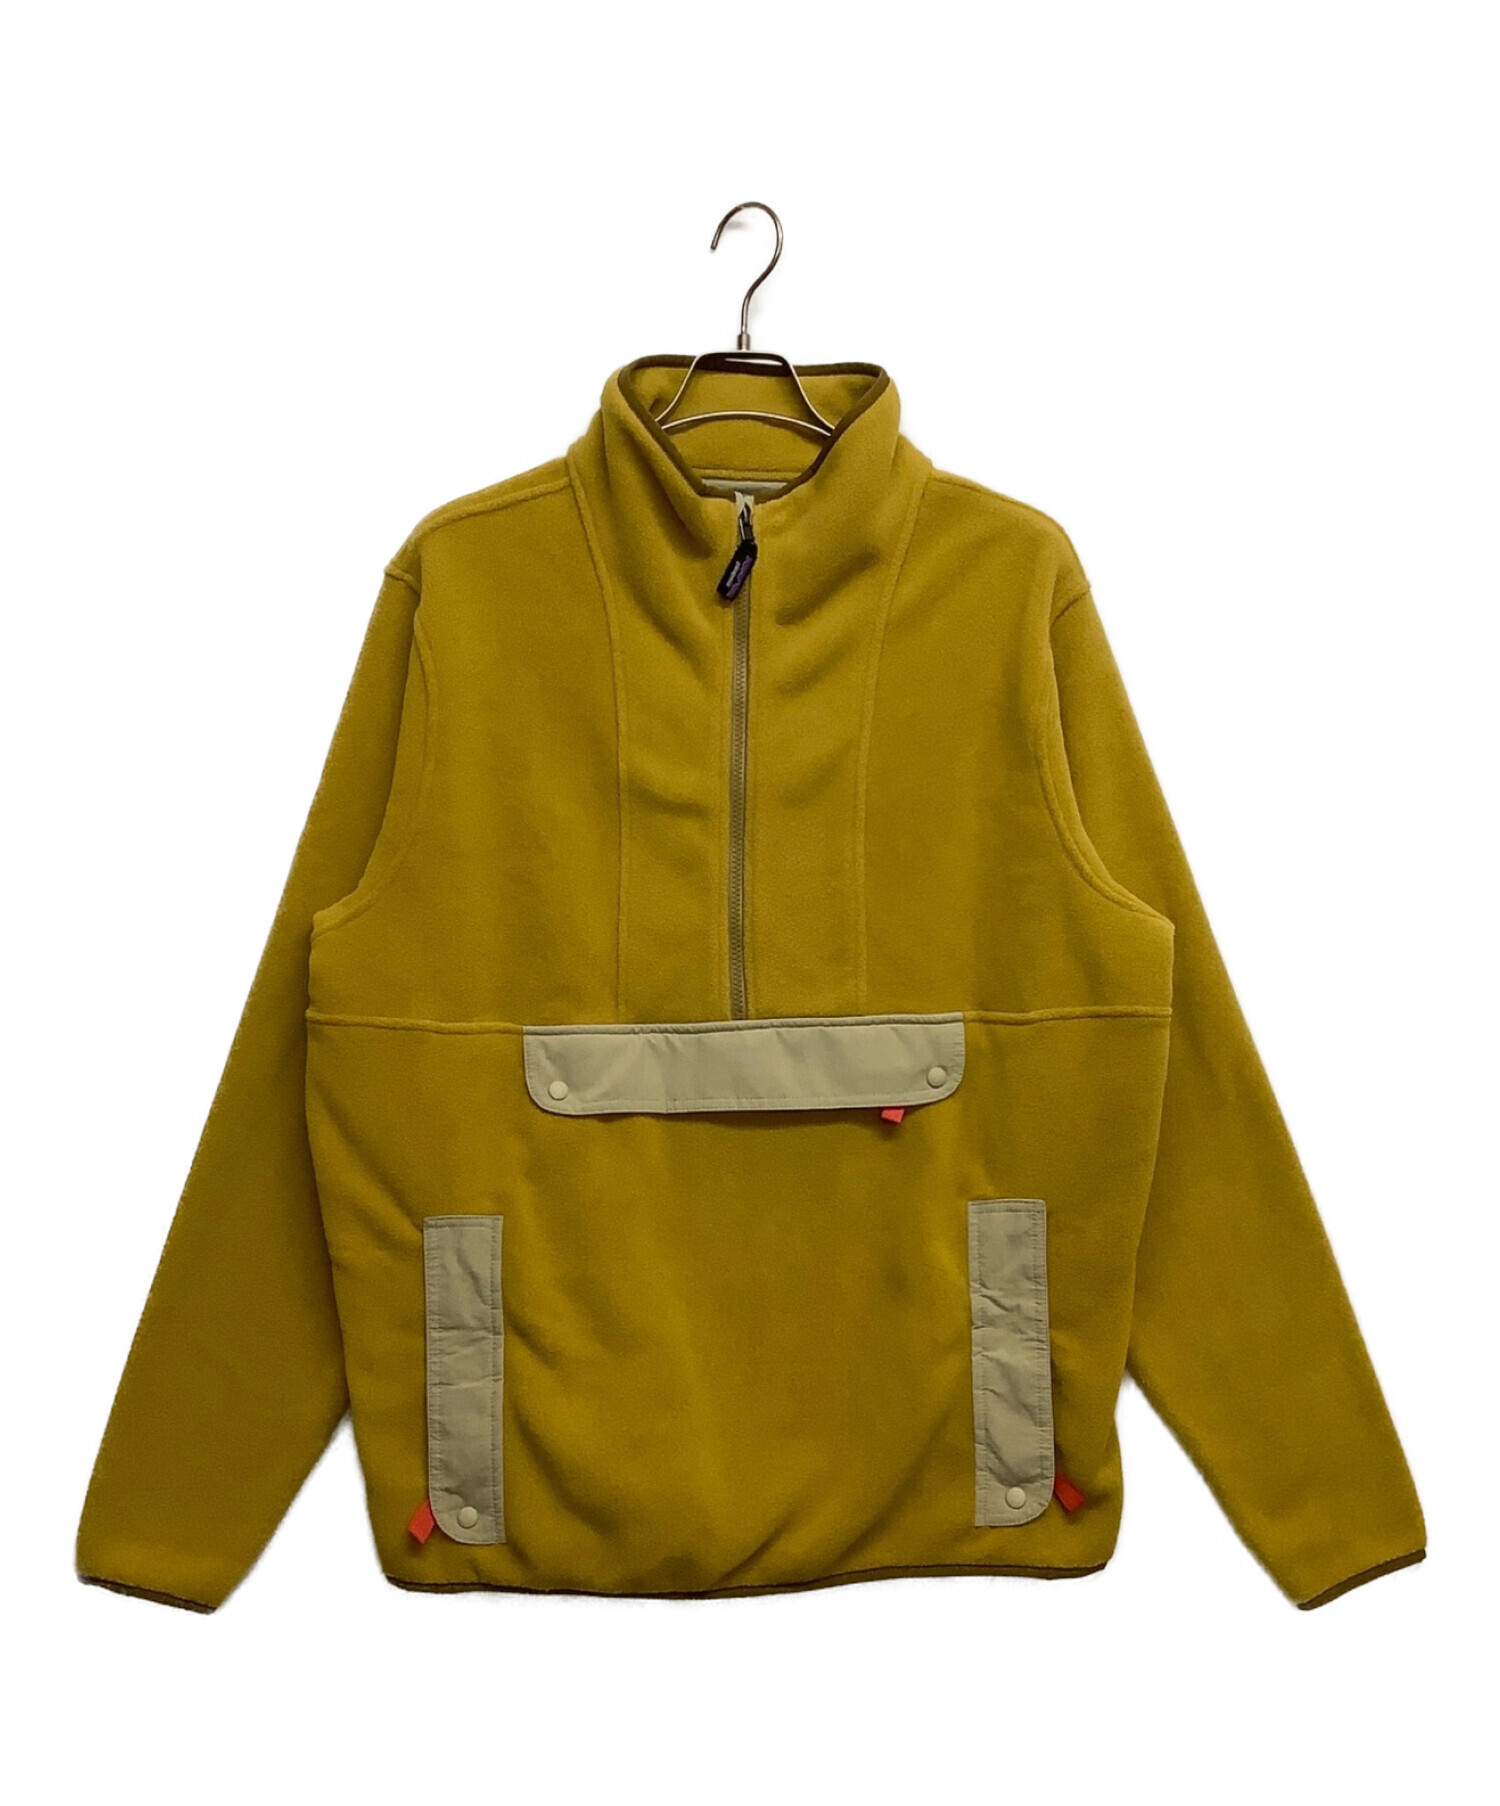 Patagonia (パタゴニア) シンチラアノラックフリースジャケット オレンジ サイズ:L 未使用品